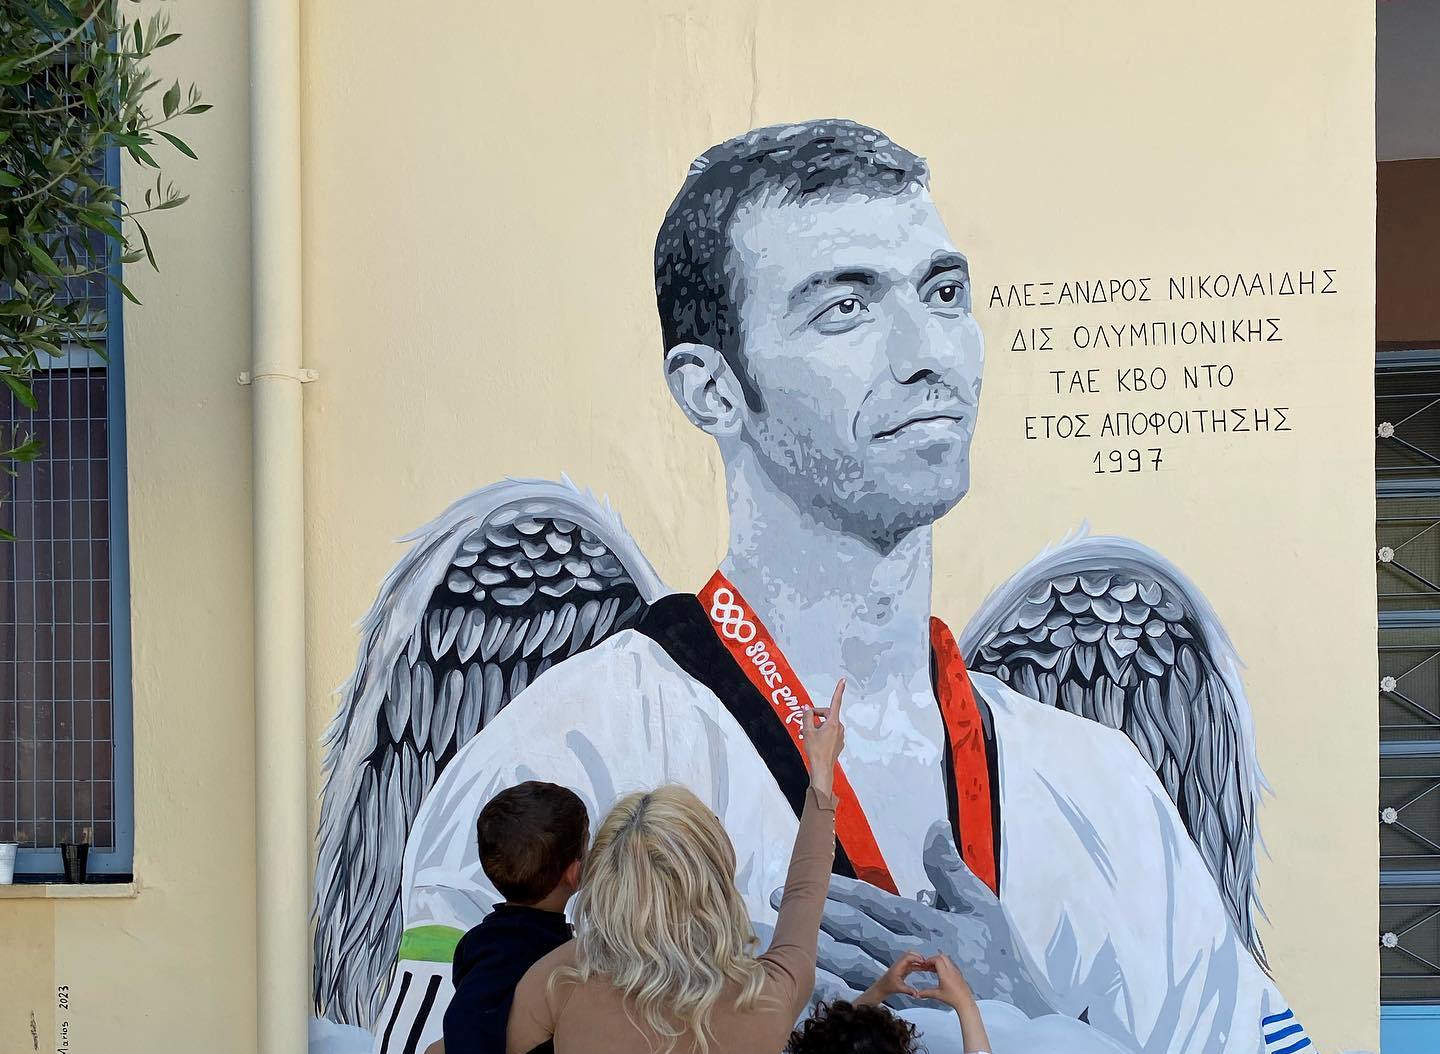 Αλέξανδρος Νικολαΐδης: Γκράφιτι με φτερά αγγέλου προς τιμήν του στο σχολείο που ήταν μαθητής